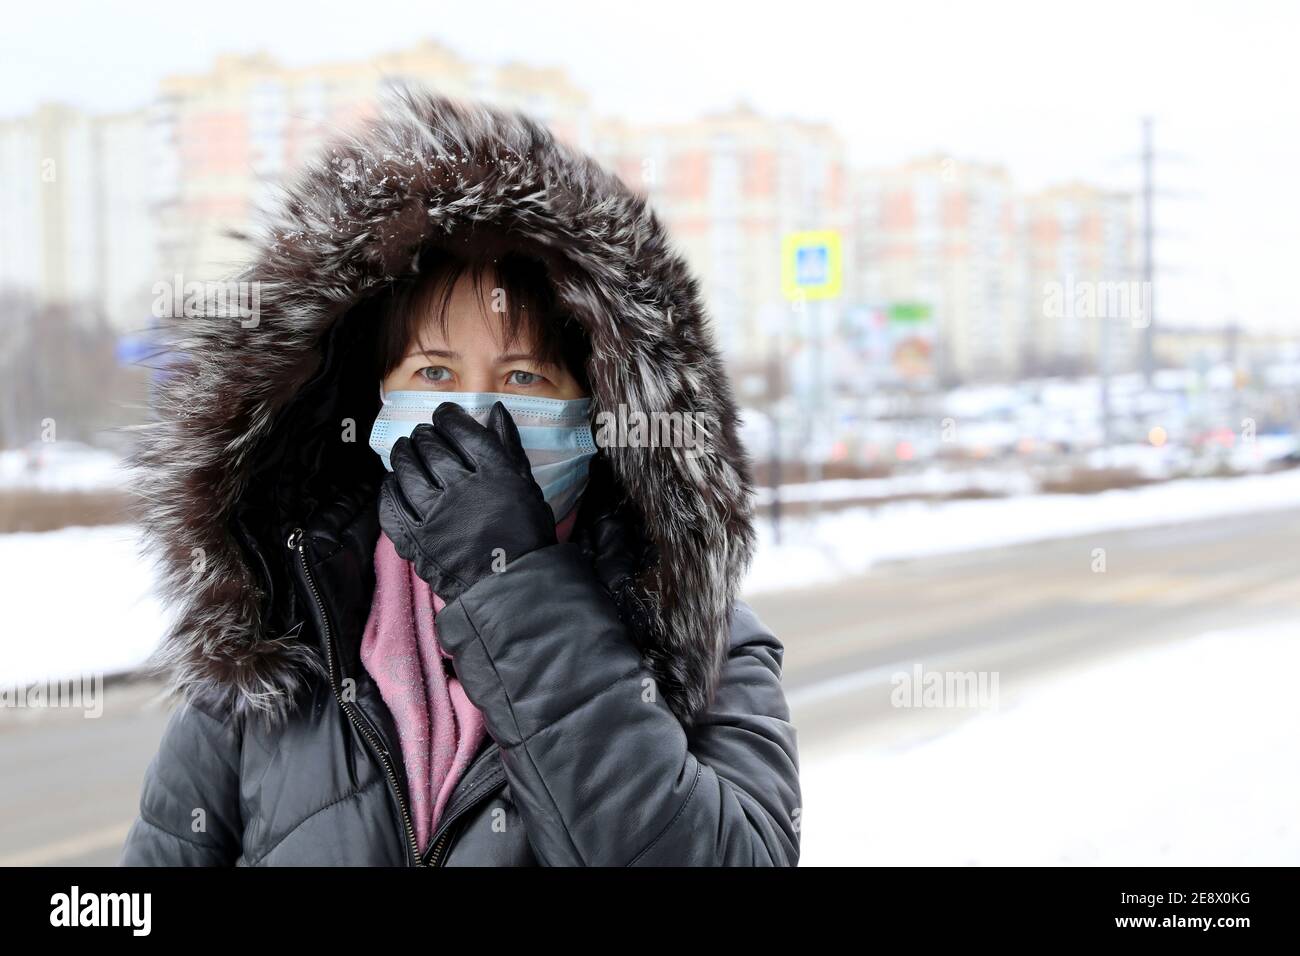 Coronavirus-Schutz, Frau in medizinischer Maske und Pelzhaube auf Winterstraße während des Schnees stehend. Konzept von Krankheit, Fieber, Erkältung und Grippe Stockfoto